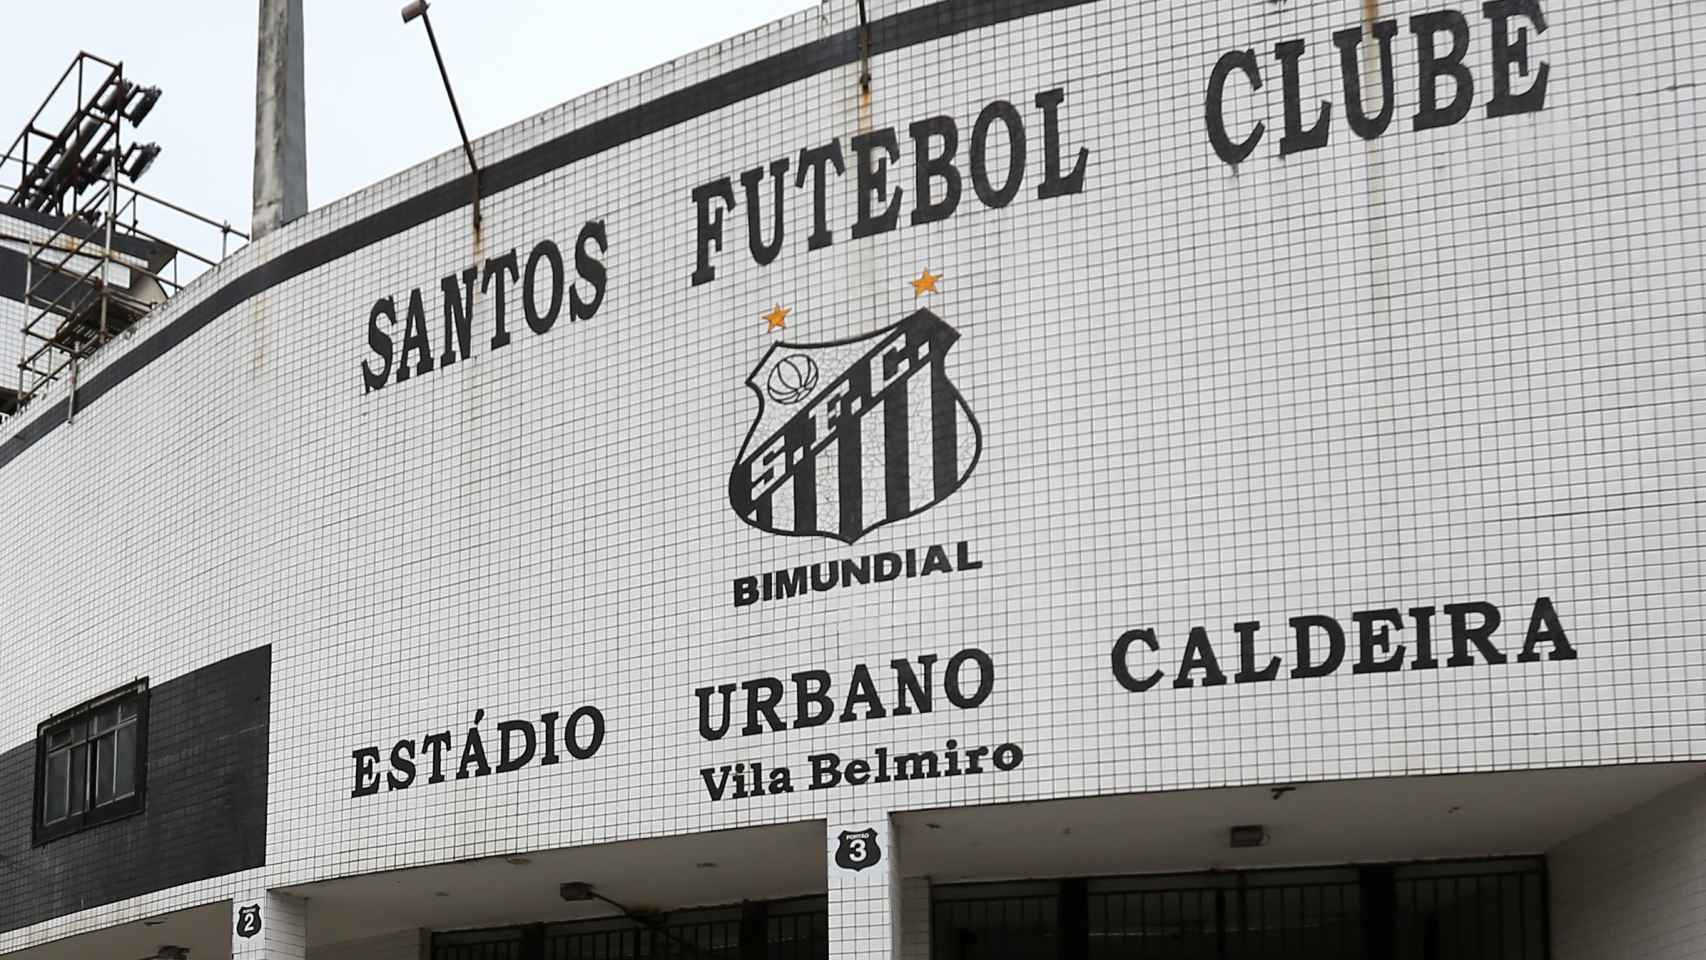 El estadio del Santos, el Urbano Caldeira, en Vila Belmiro